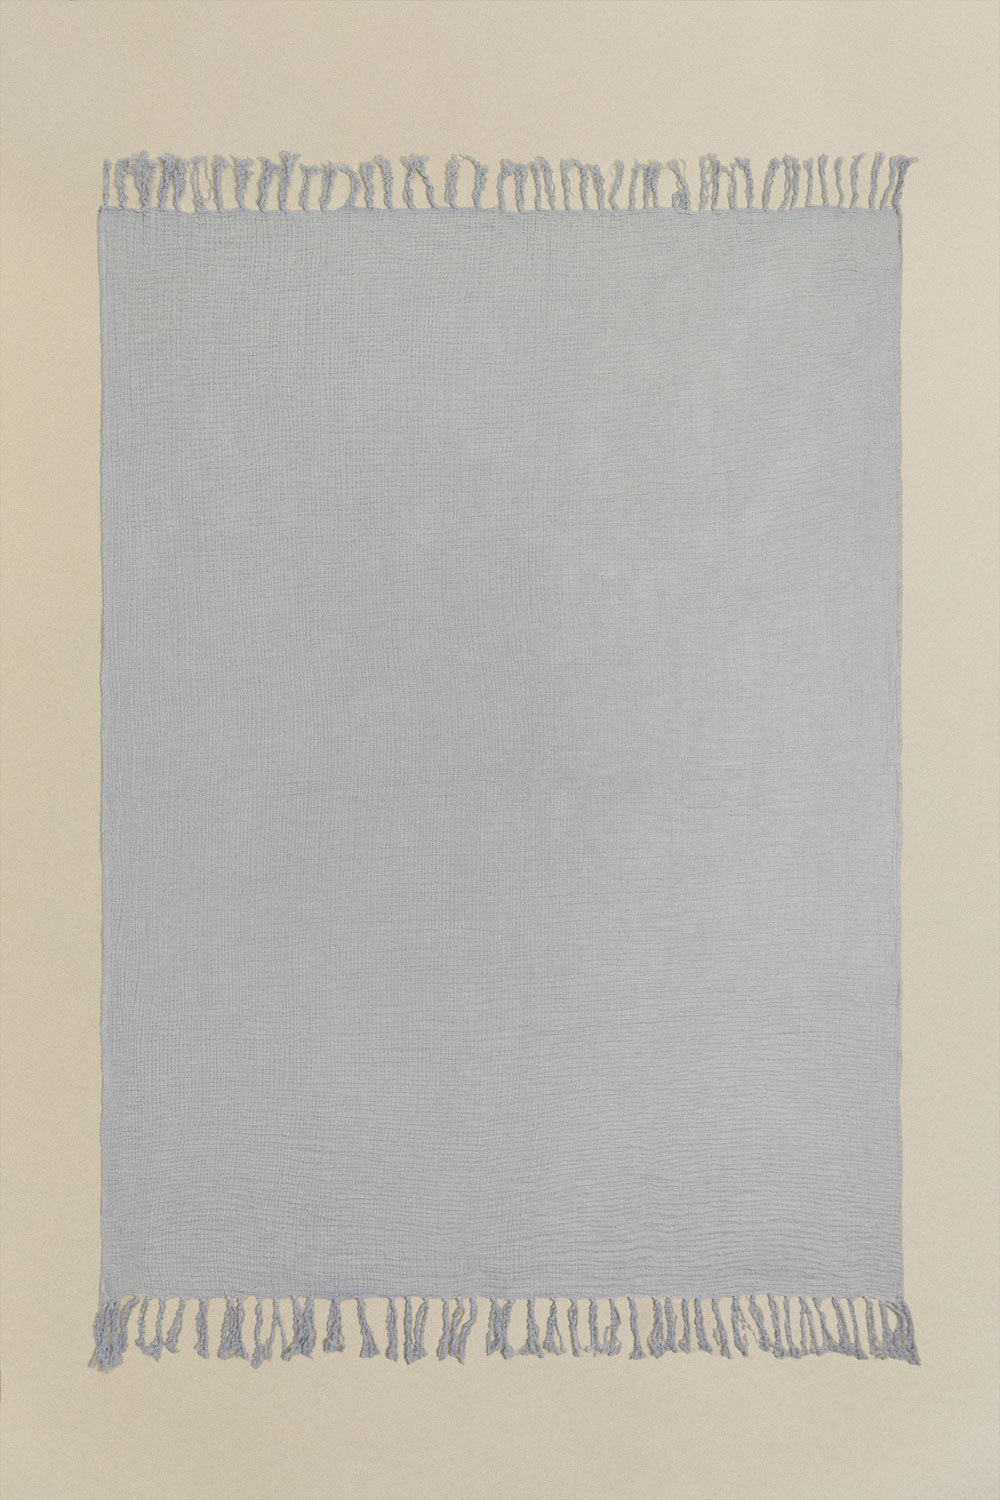 Coperta Plaid in garza di cotone (170x130 cm) Eloi , immagine della galleria 1